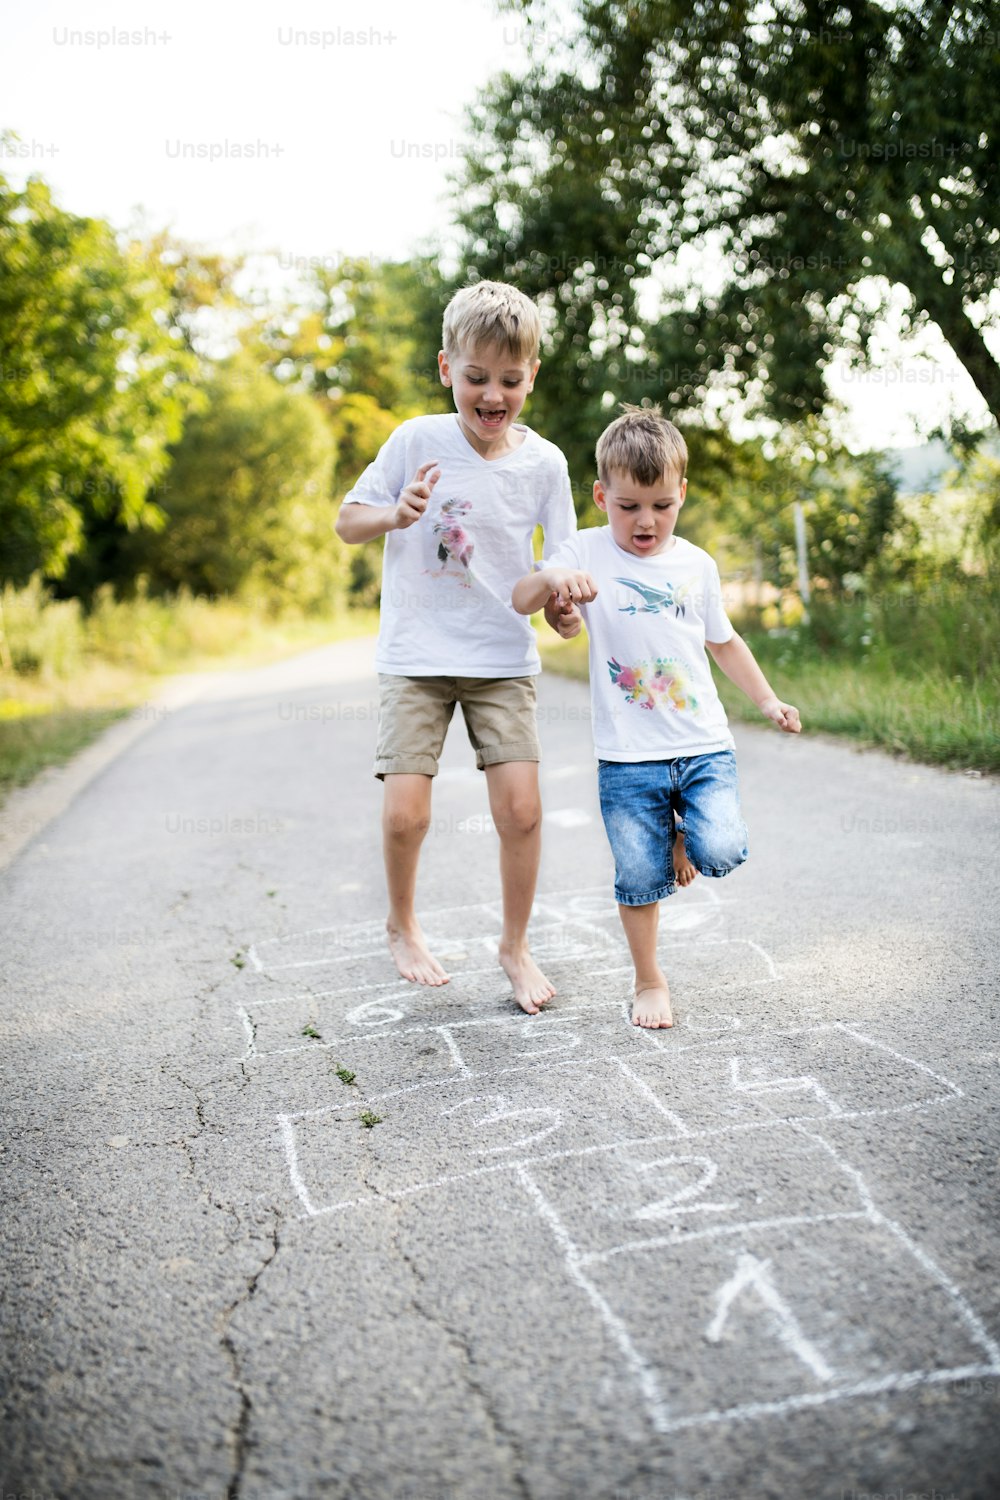 Dos niños pequeños descalzos y alegres saltando en un camino en el parque en un día de verano.